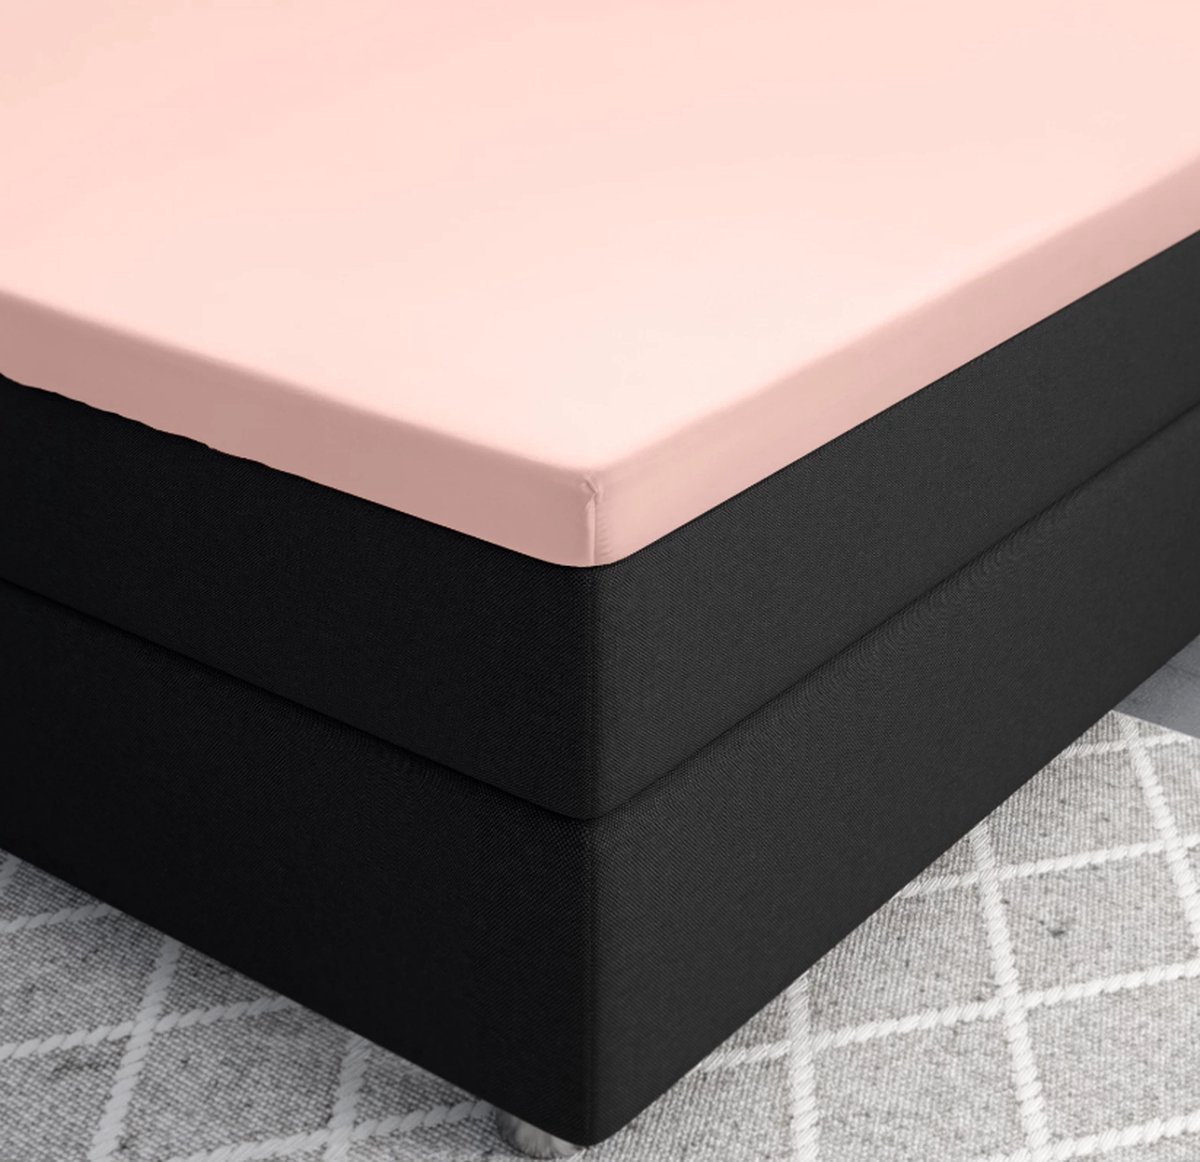 Premium katoen/satijn hoeslaken roze - 180x200 (lits-jumeaux) - zacht en ademend - luxe en chique uitstraling - subtiele glans - ideale pasvorm